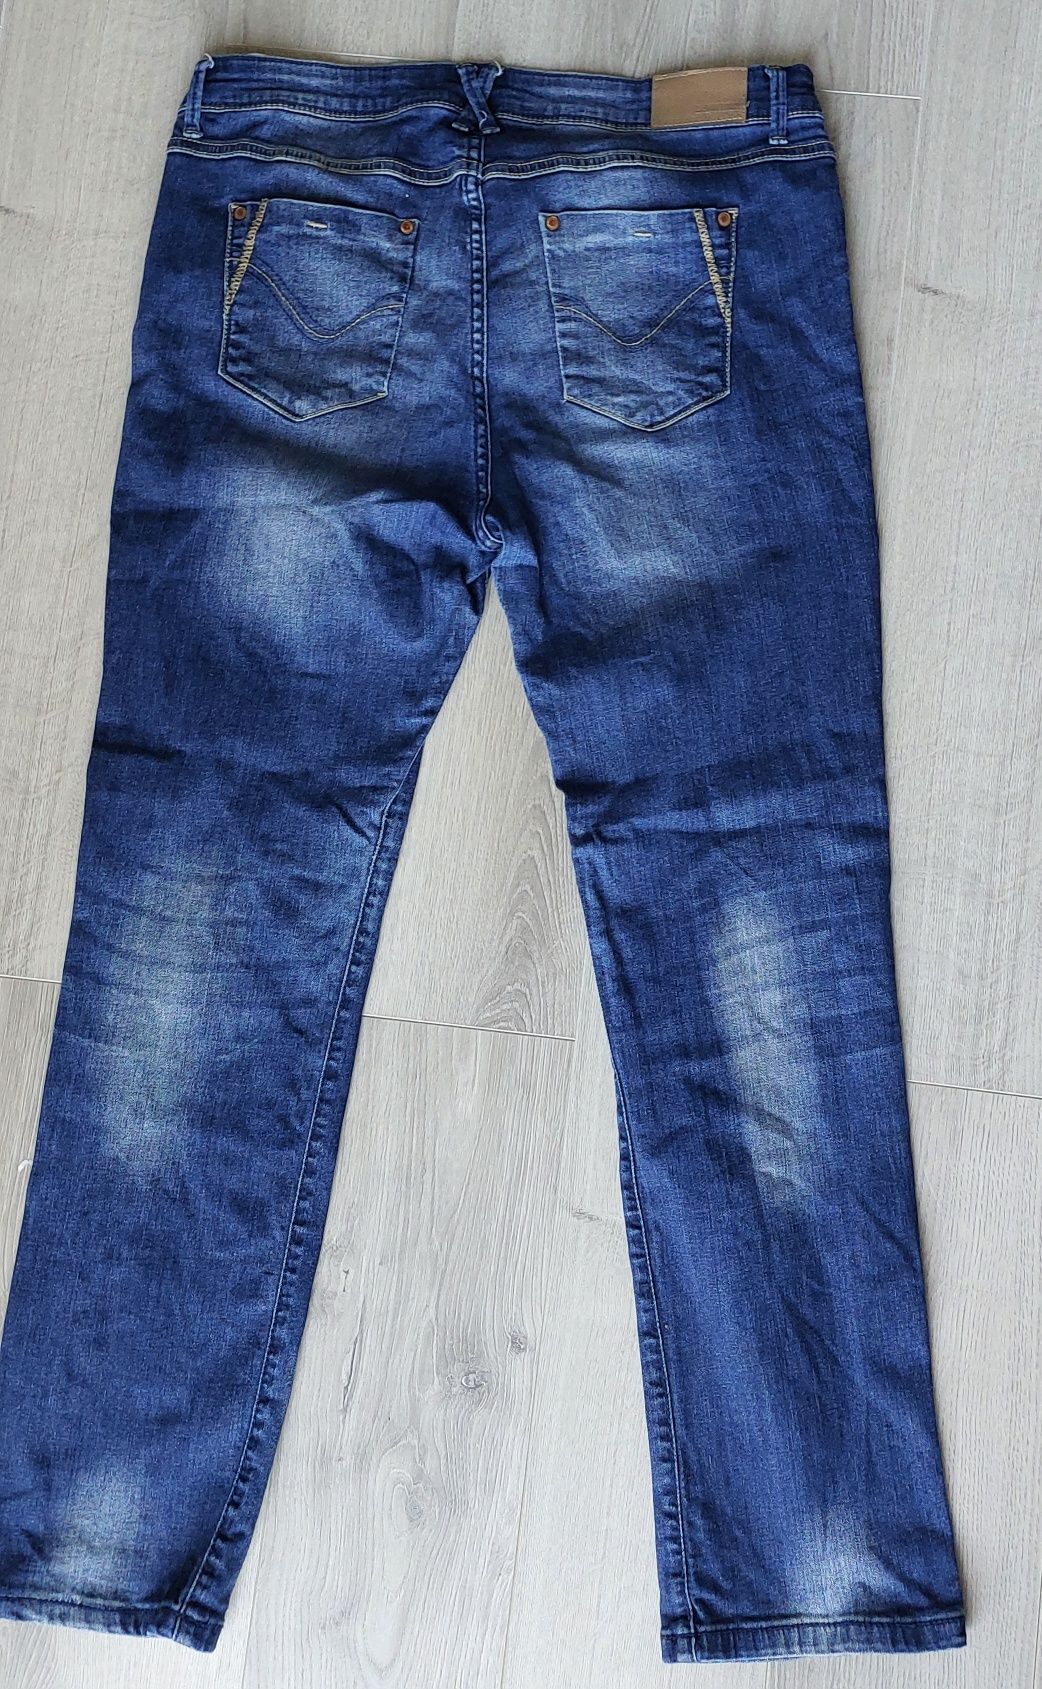 Niebieskie spodnie męskie dżinsowe marki DENIM1982 stan bardzo dobry